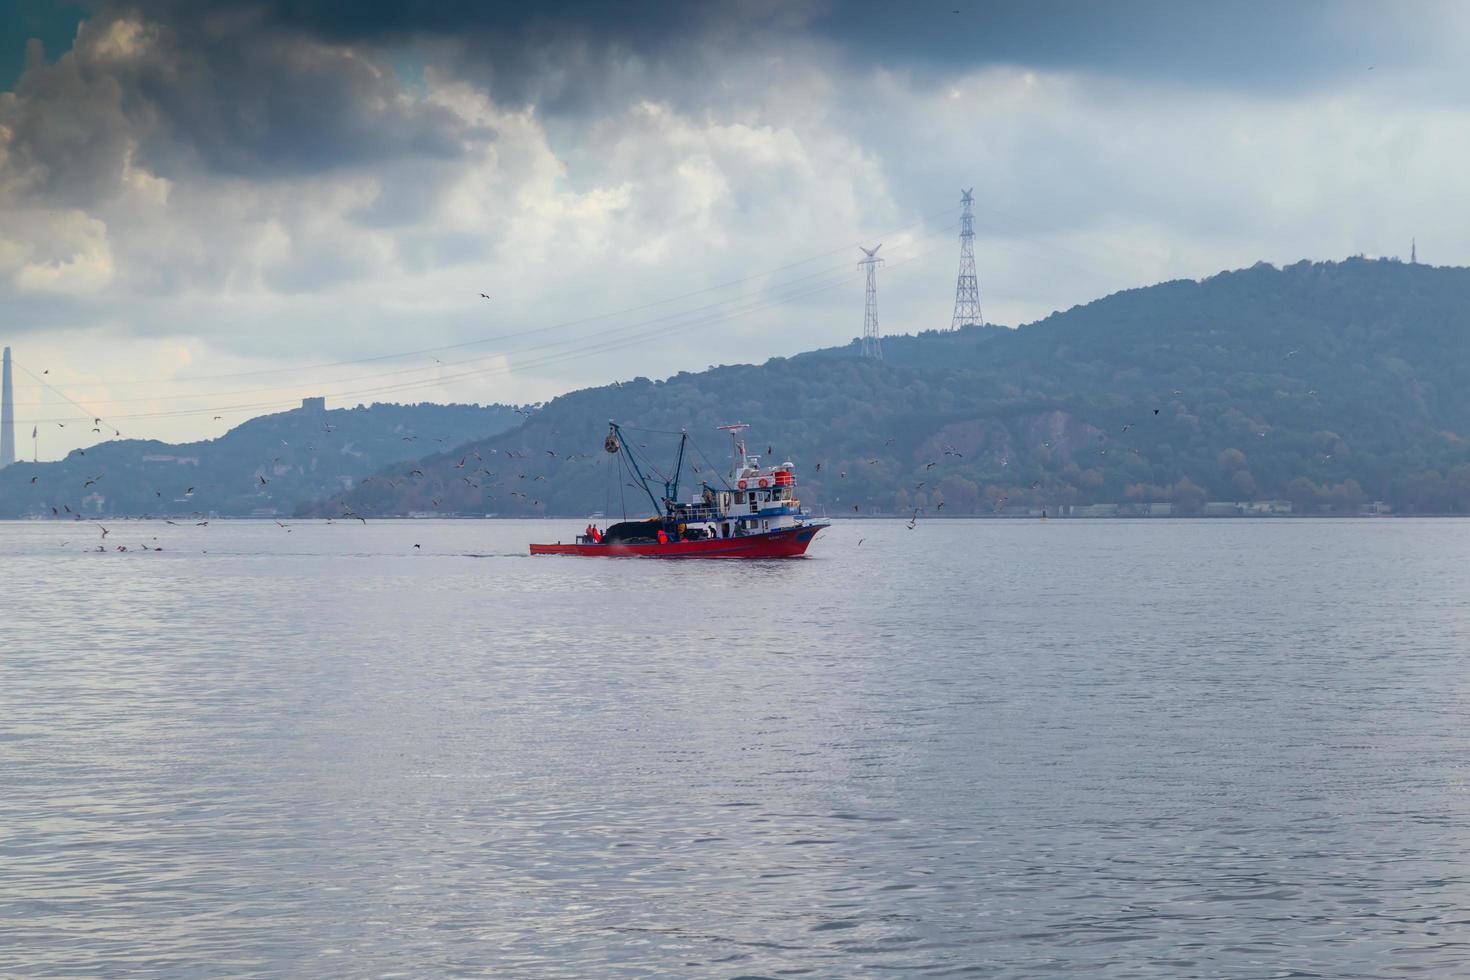 vissersboten die op een mistige dag varen, Bosporus Istanboel. foto